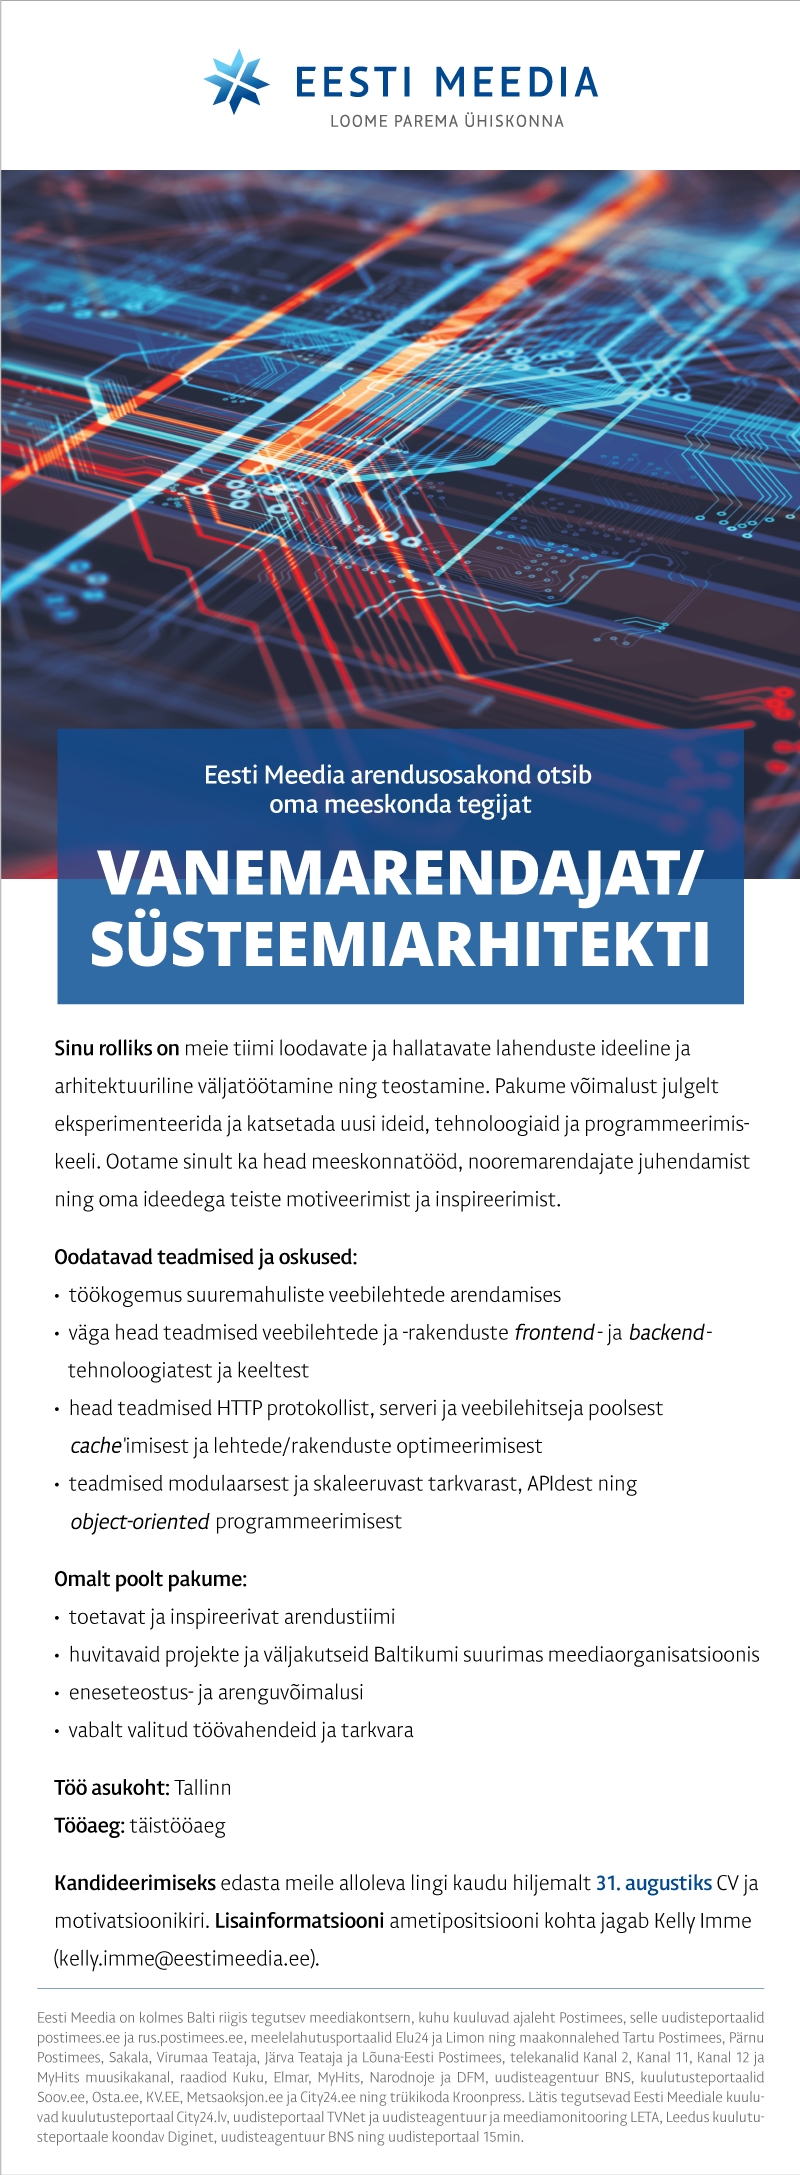 Eesti Meedia Vanemarendaja/süsteemiarhitekt